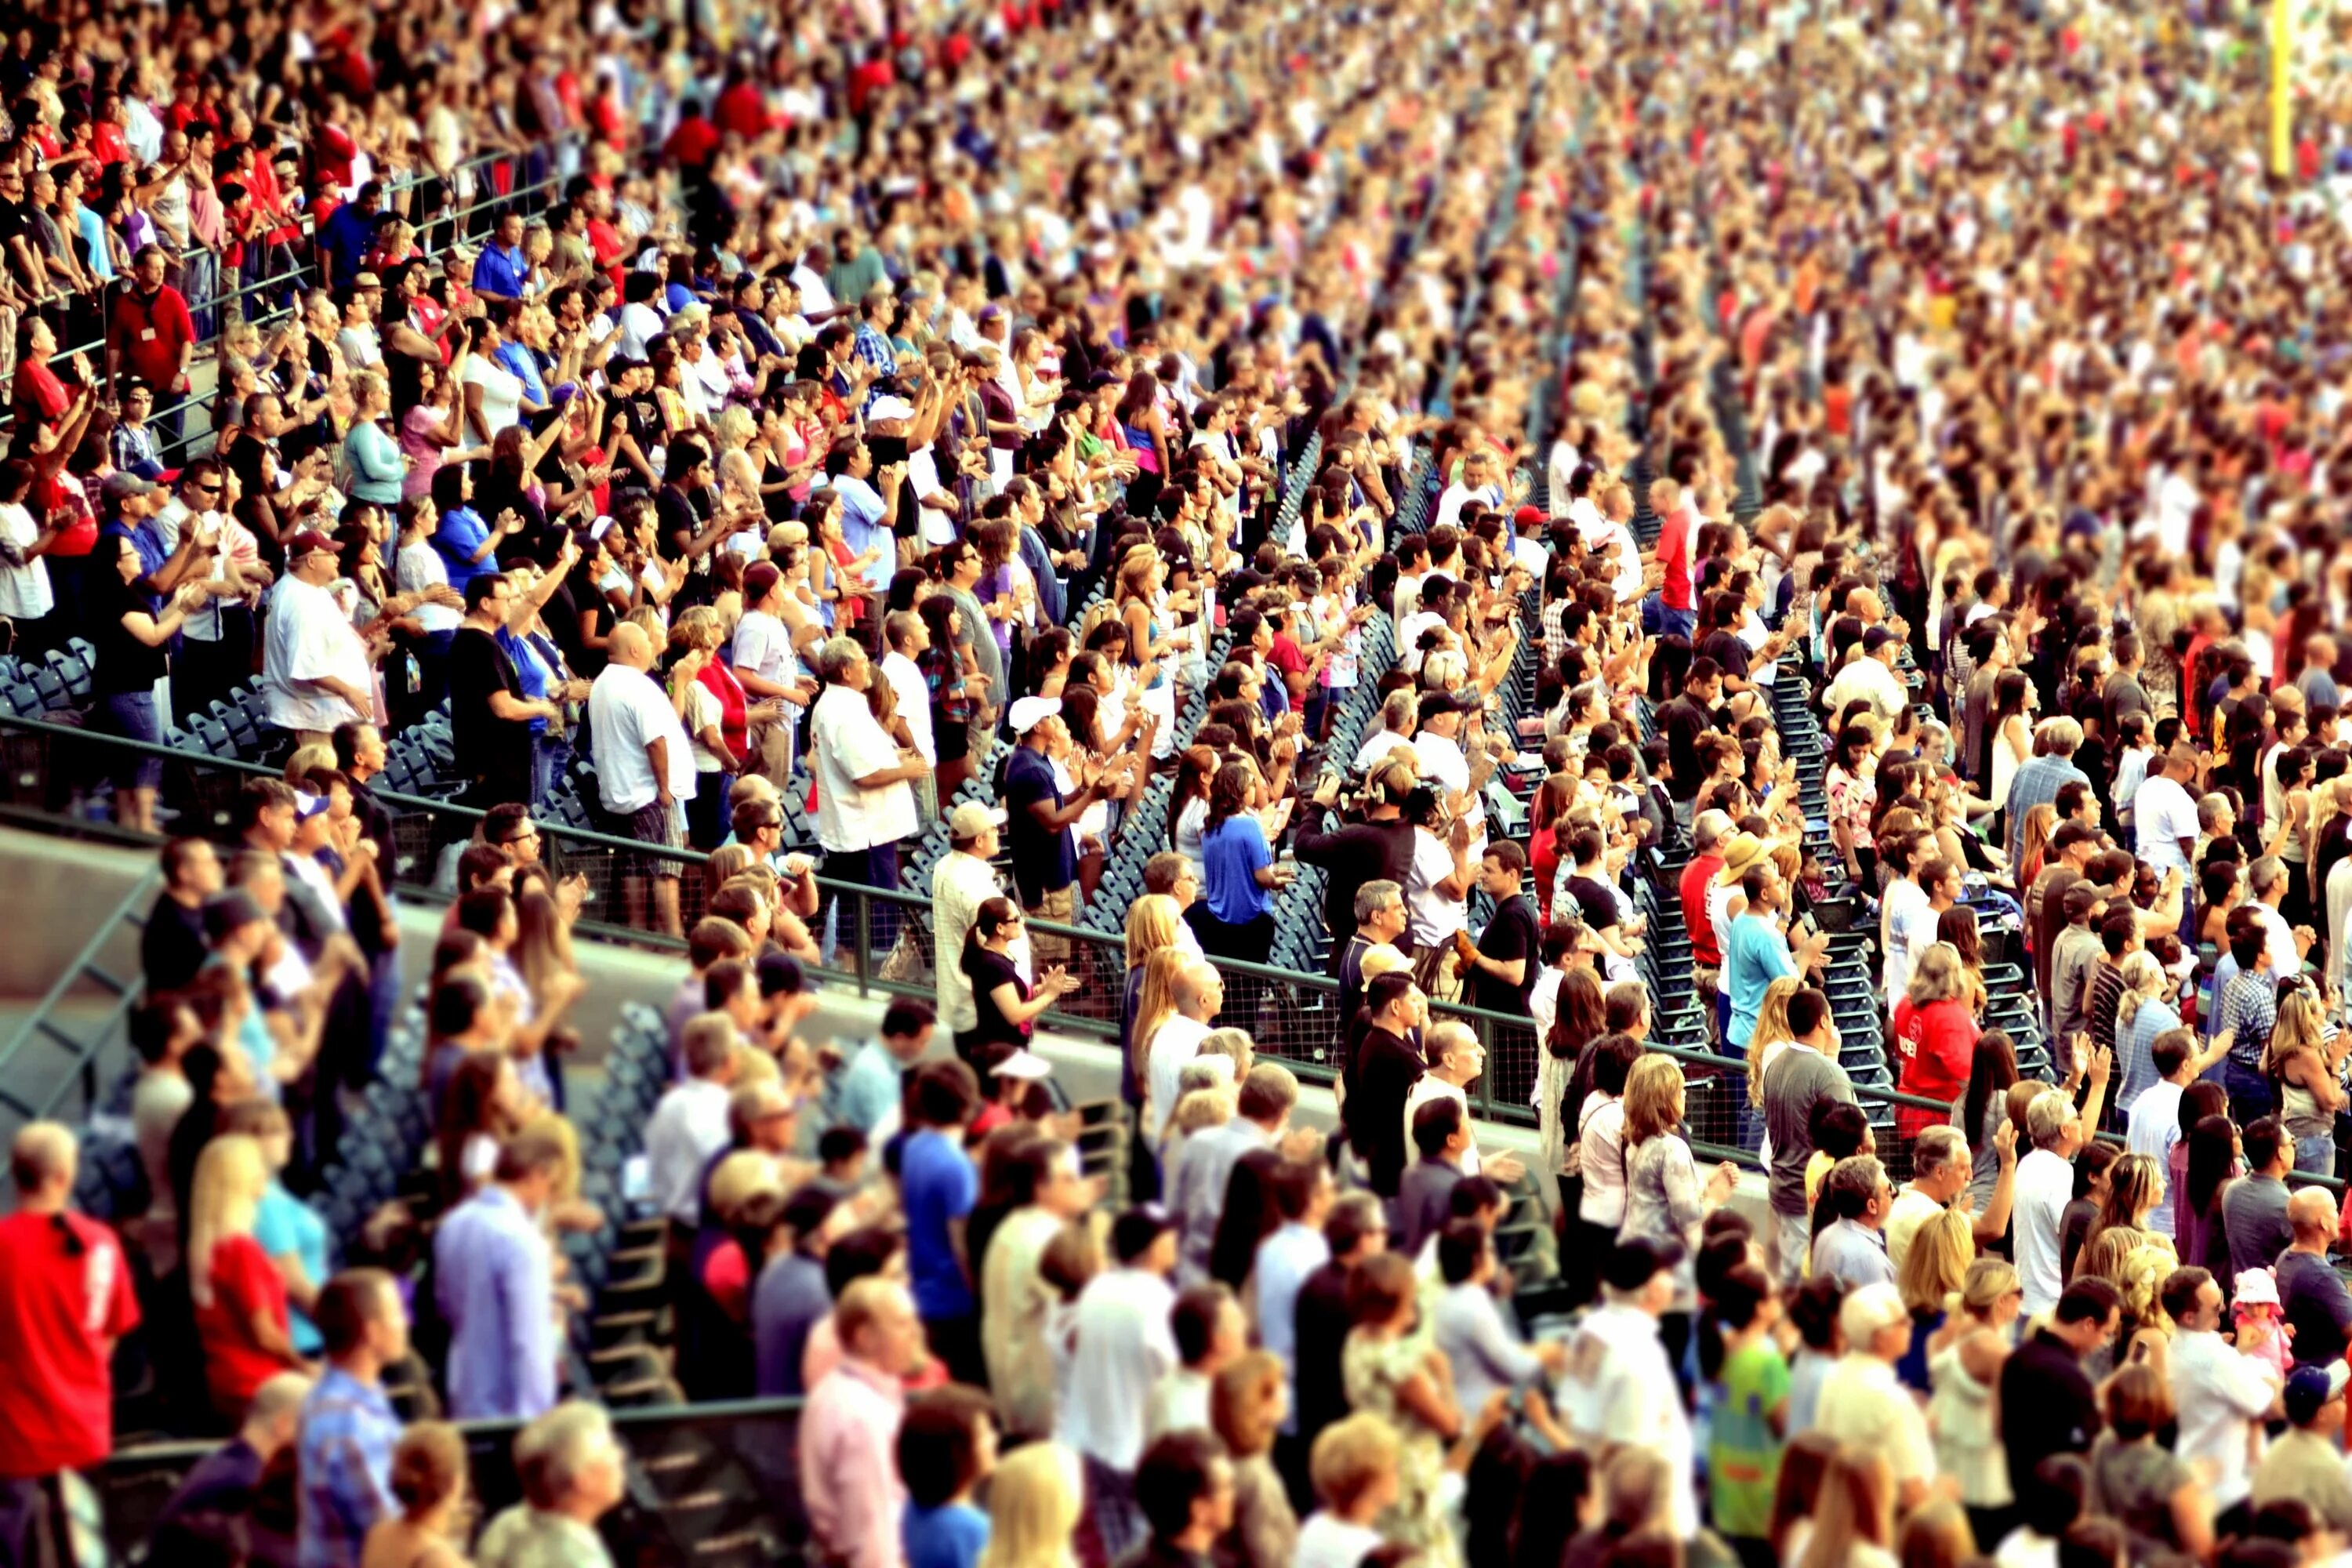 18 много людей. Человек толпы. Много людей. Массовое скопление людей. Большая толпа людей.